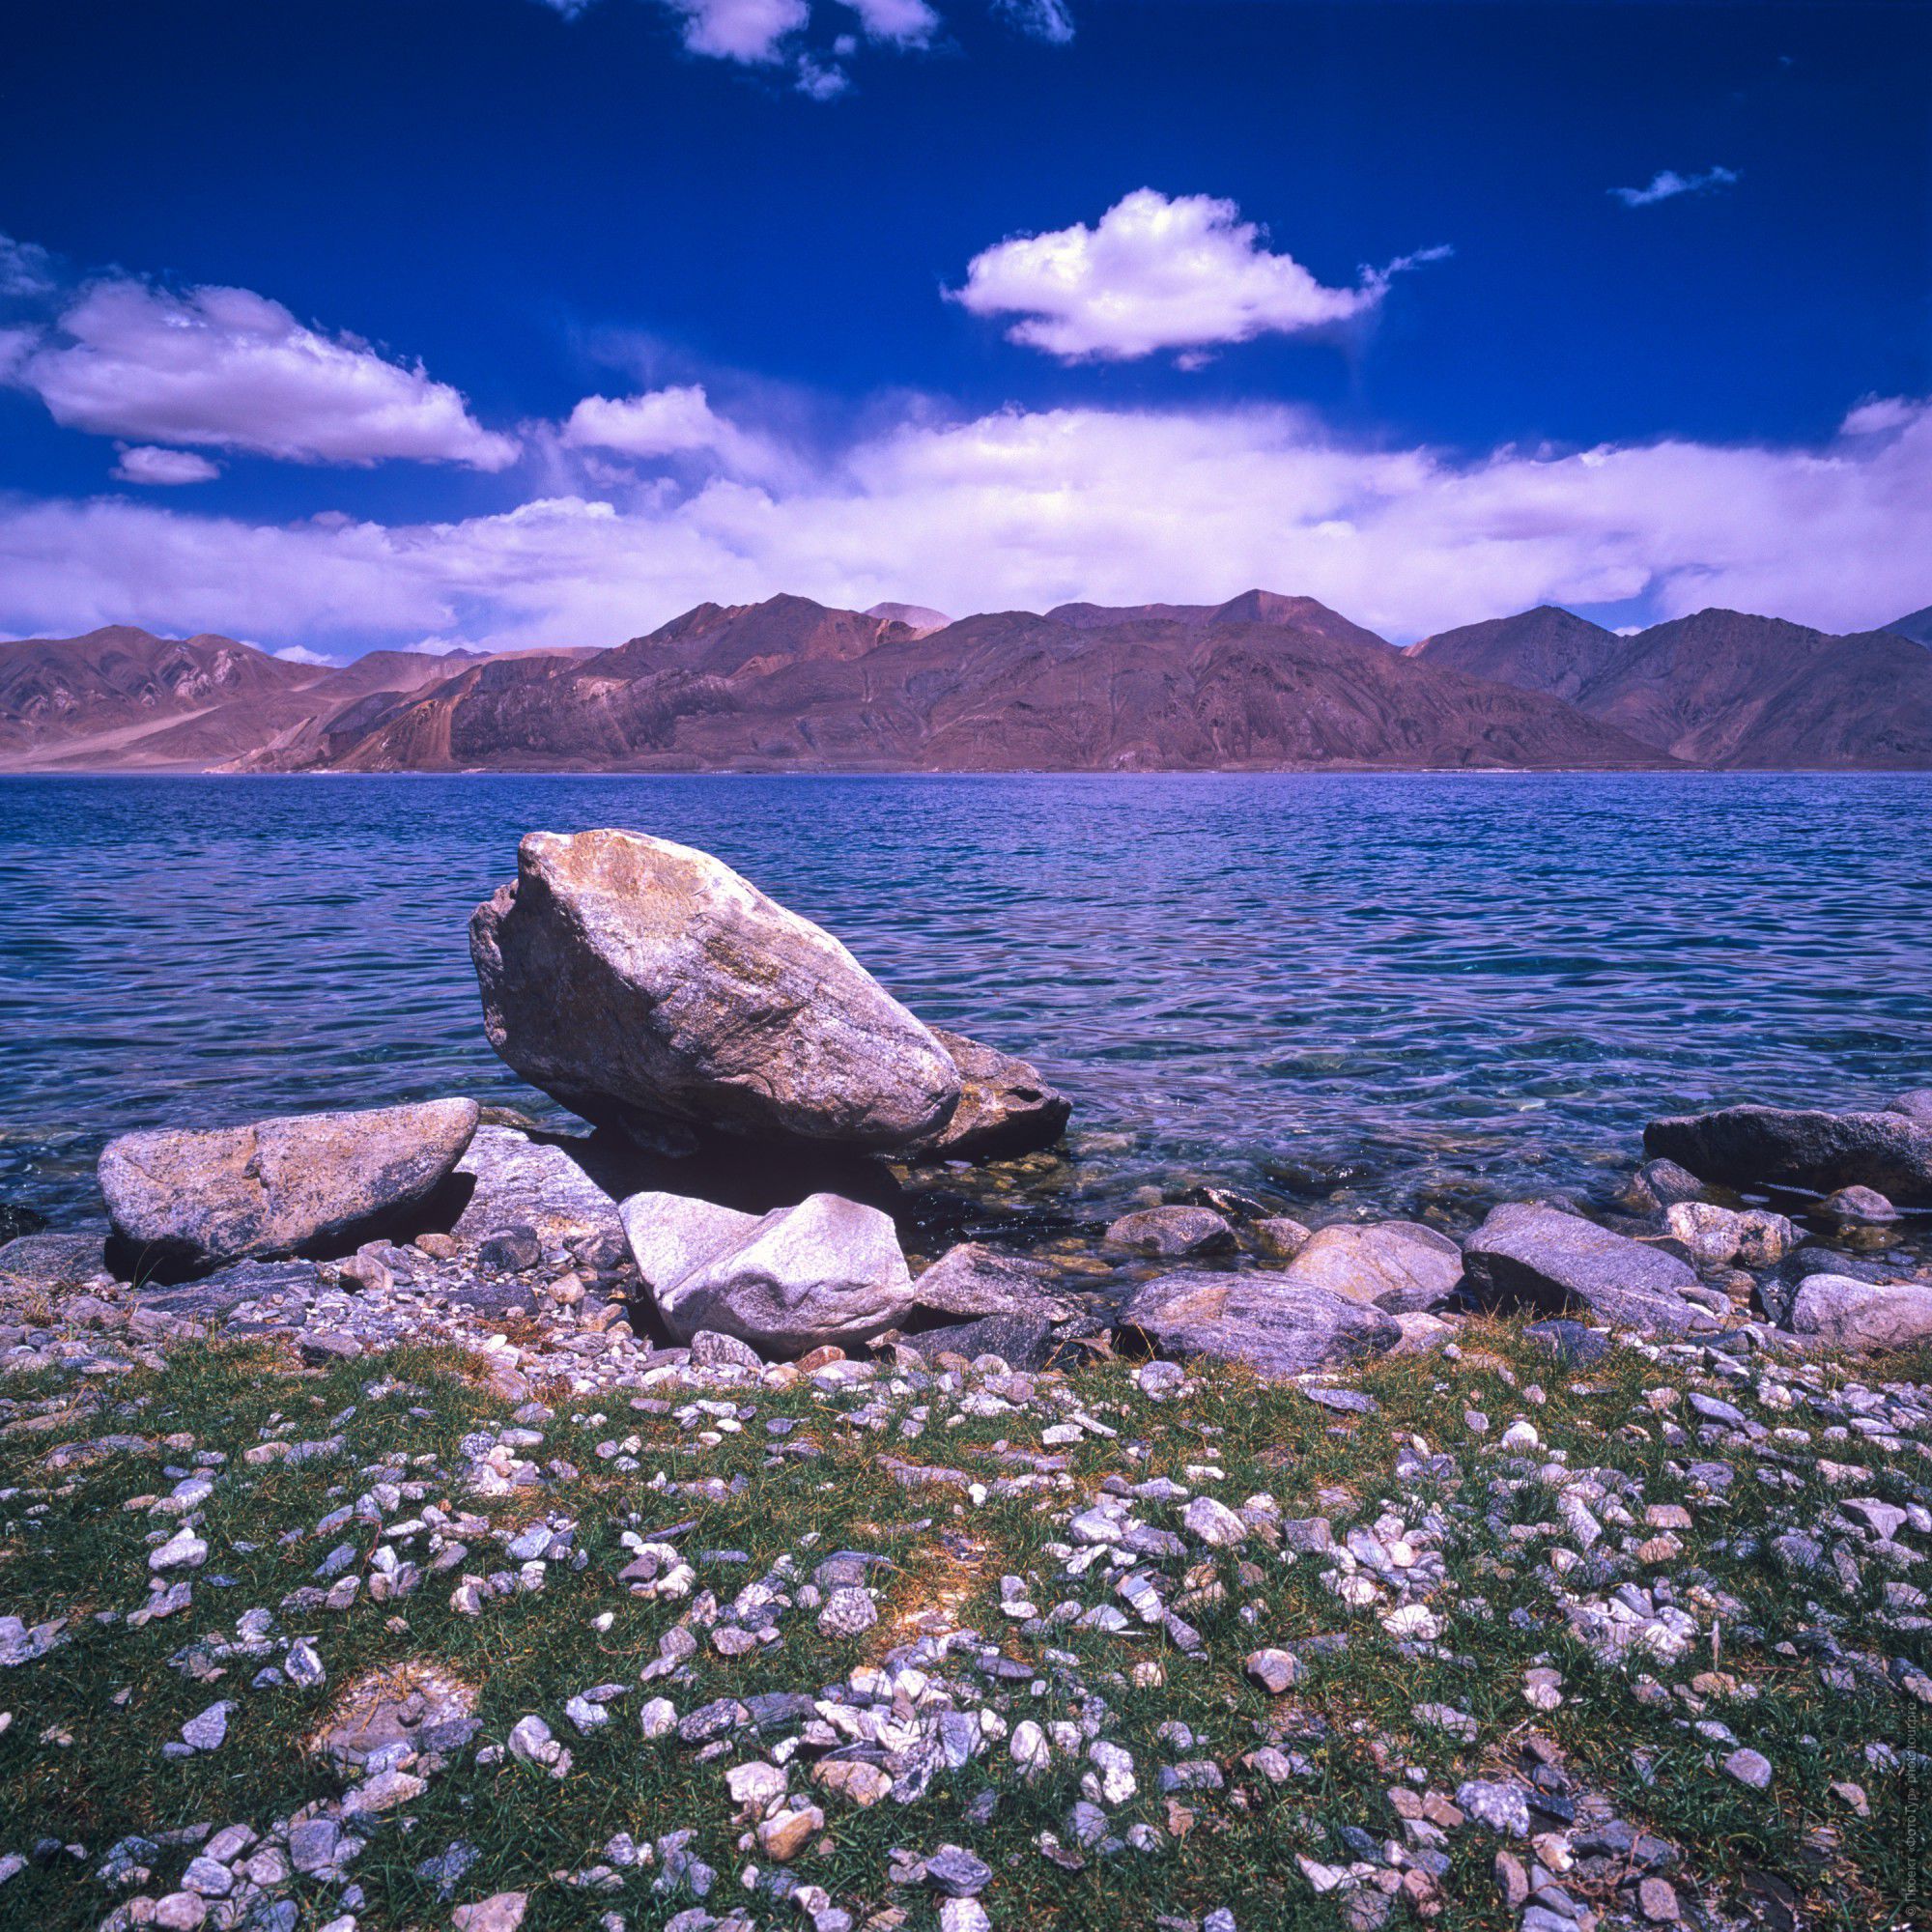 Пленочная фотография Синева Пангонг Тсо, пленка, фототур по высокогорным озерам Ладакха.